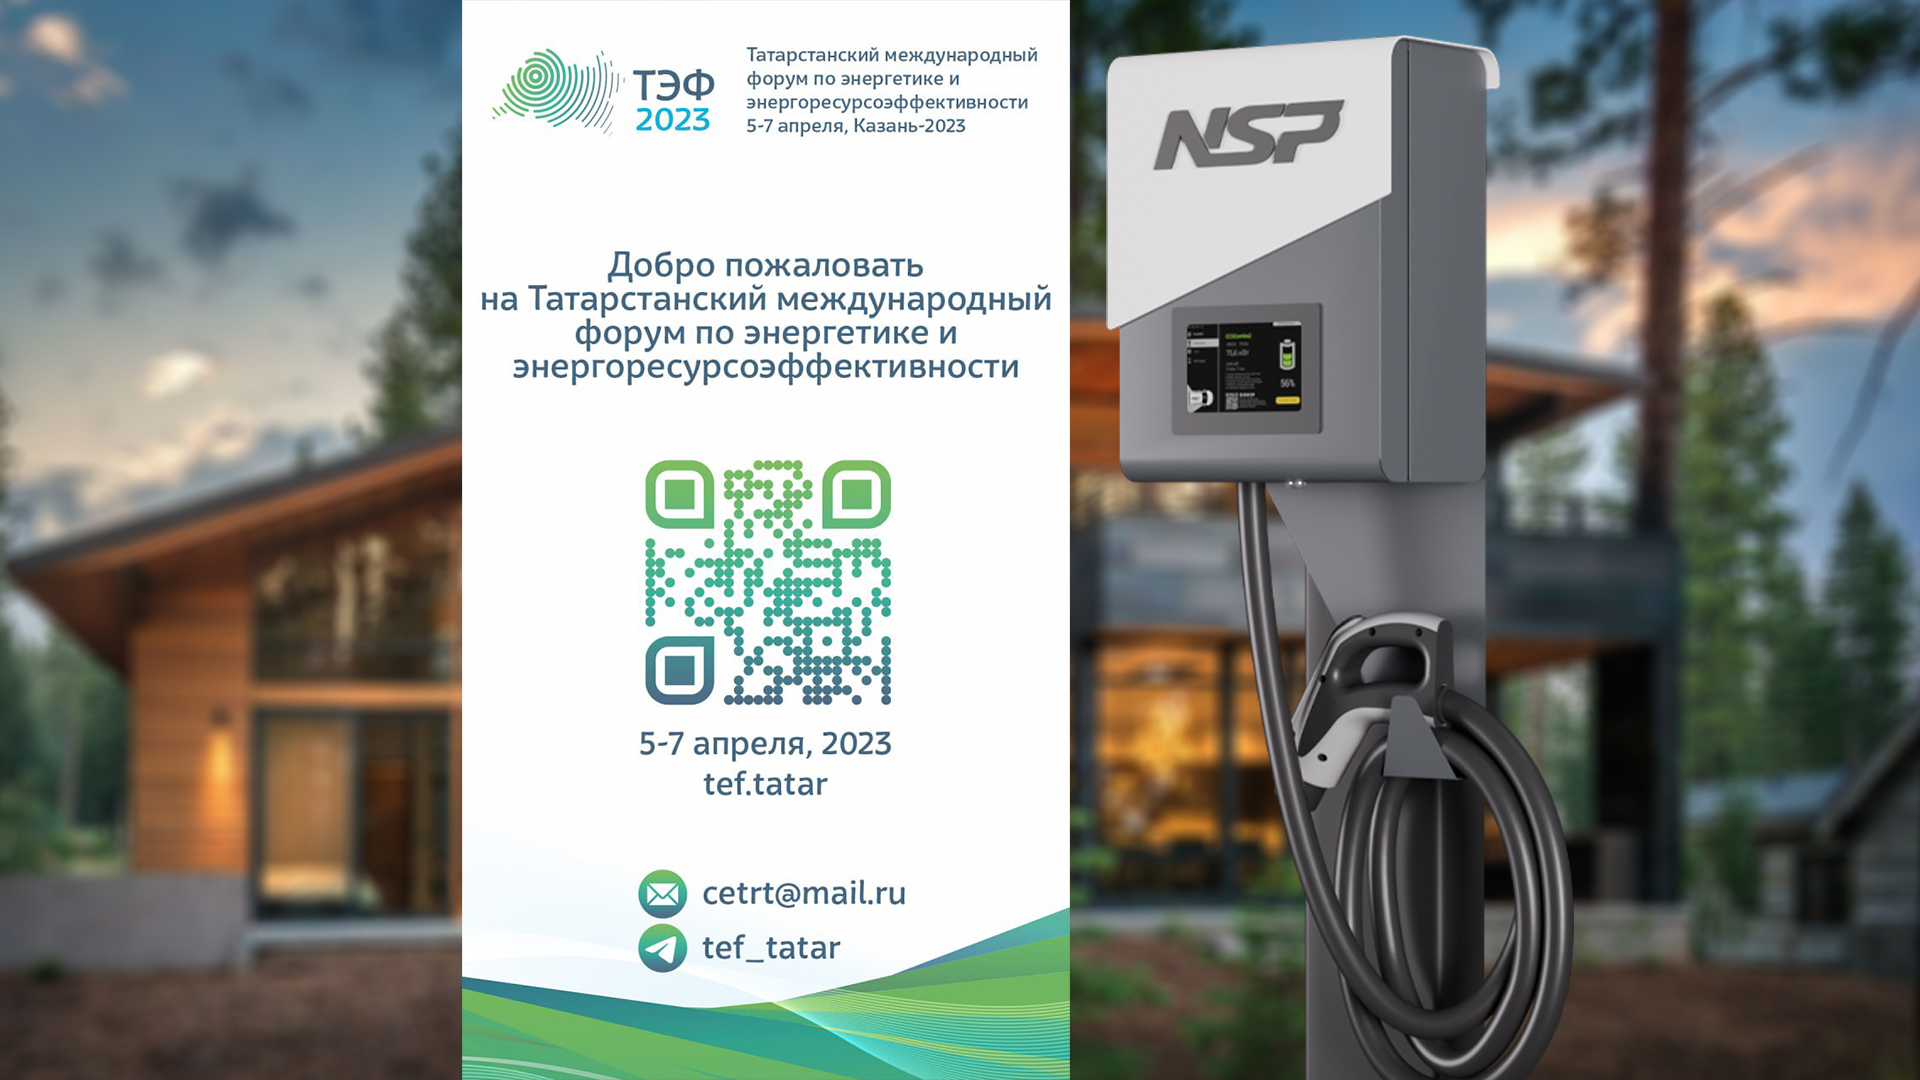 Татарстанский международный форум по энергетике и энергоресурсоэффективности (ТЭФ-2023)